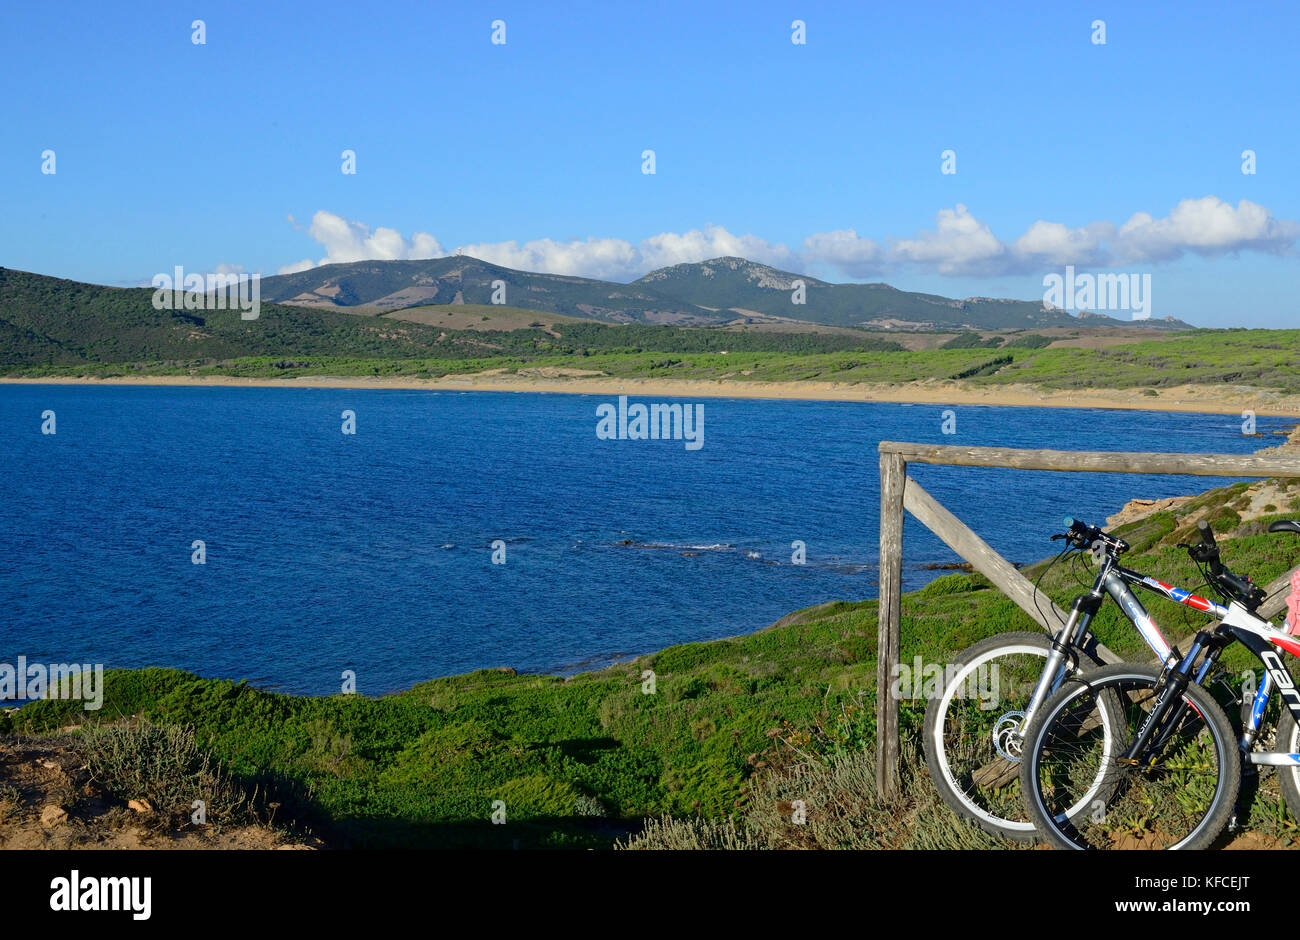 View on the beach of Porto Ferro, Sardinia, Italy Stock Photo